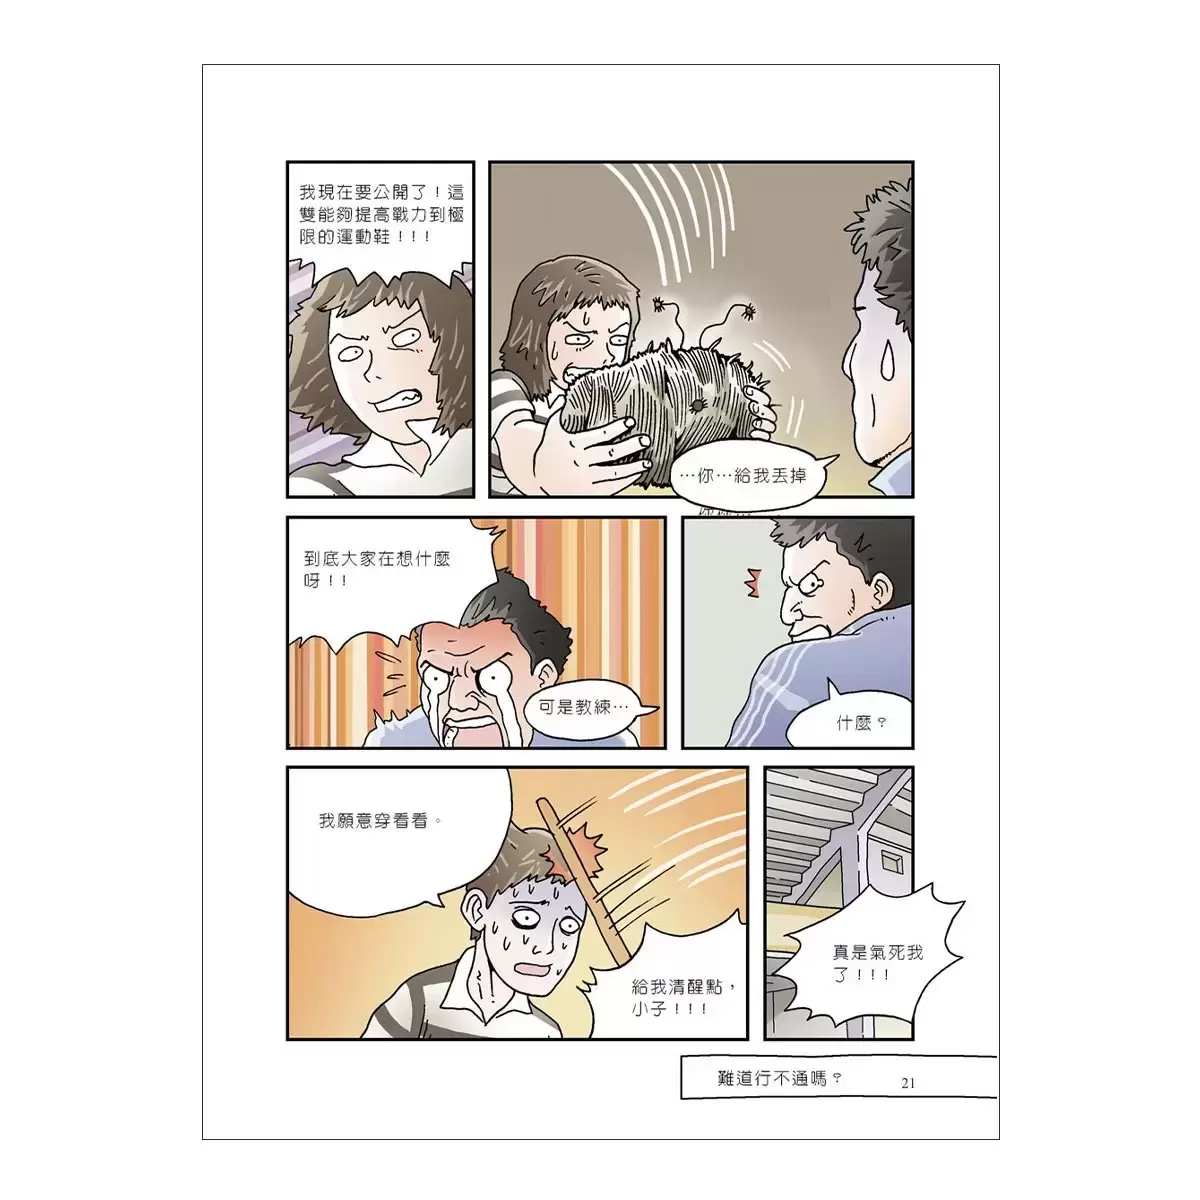 國中漫畫教科書套書 (4冊)